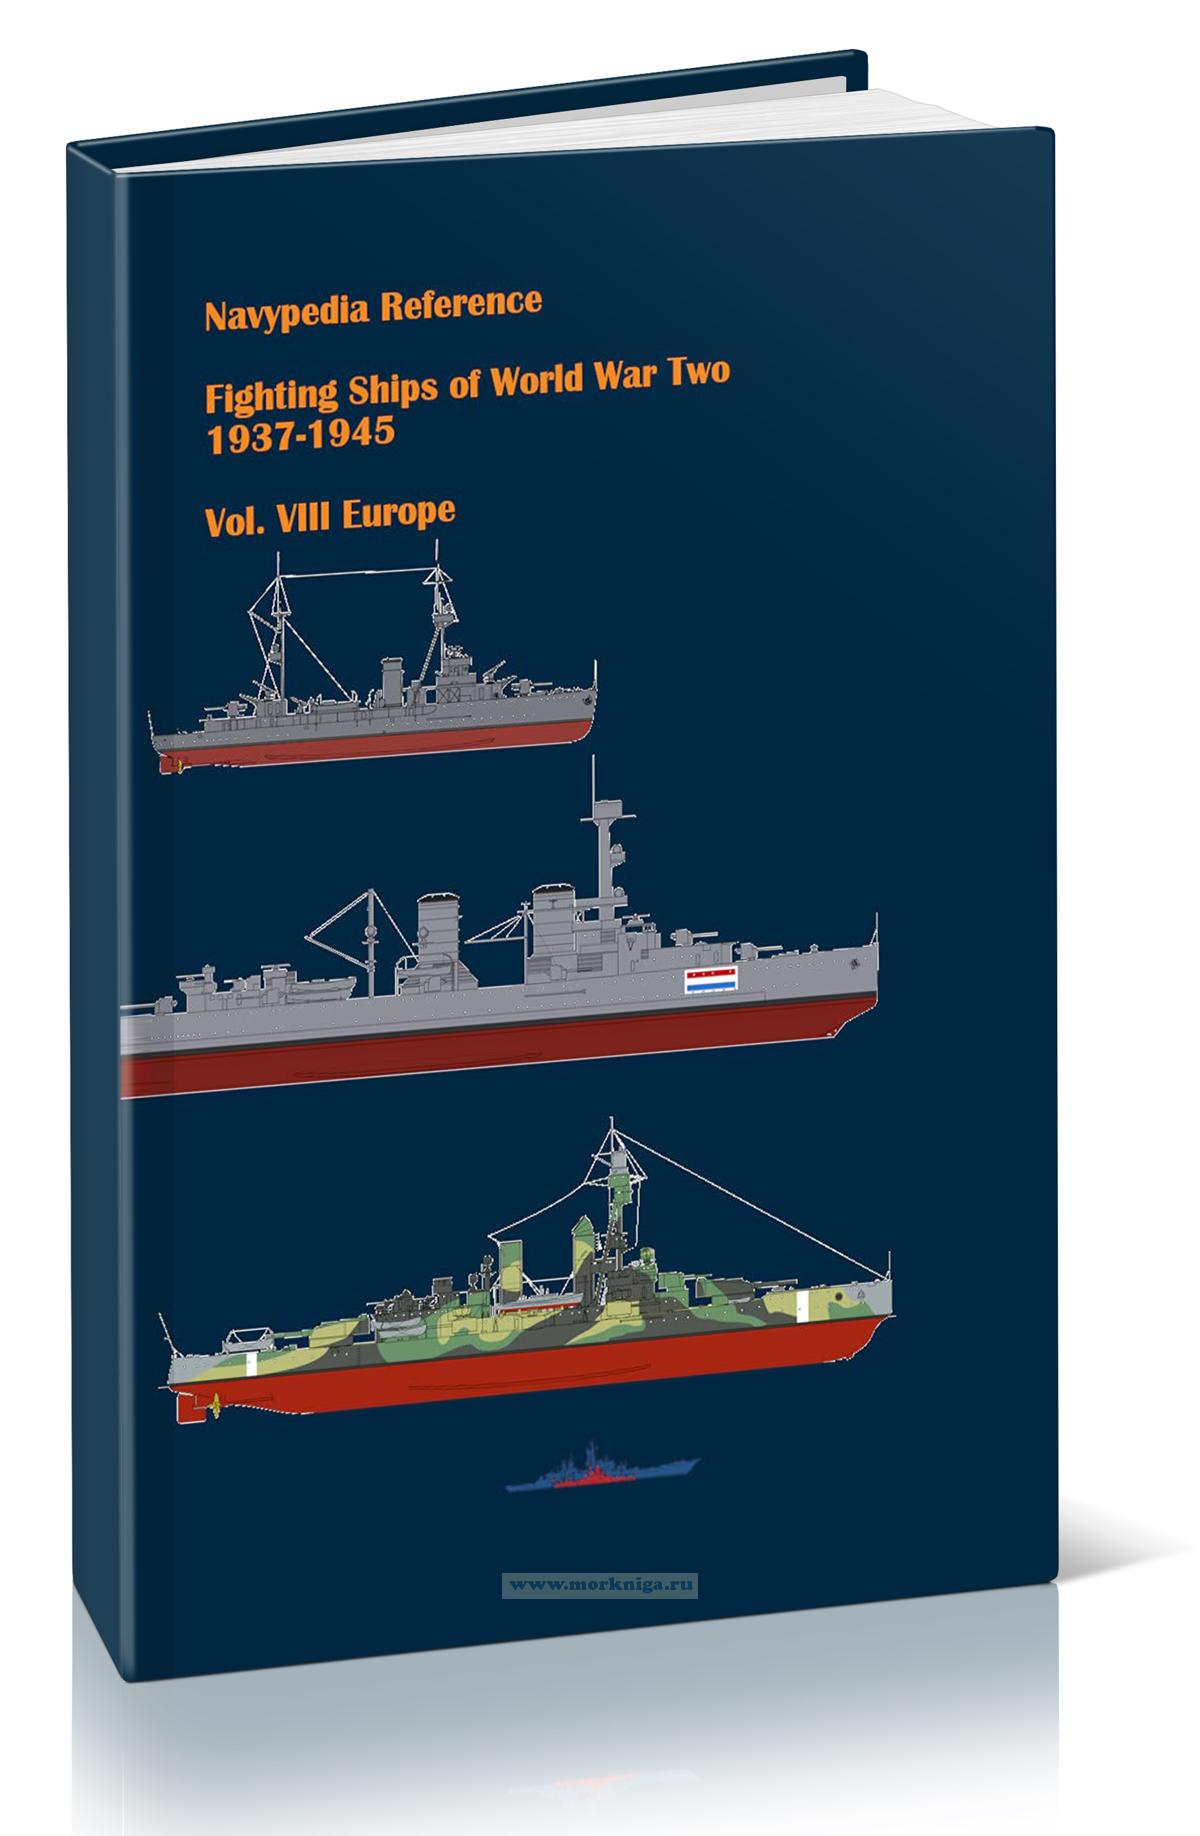 Fighting Ships of World War Two 1937-1945. Volume VIII Europe (I. Gogin, A. Dashyan) / Боевые корабли Второй мировой войны 1937-1945. Том VIII Европа (И. Гогин, А. Дашьян)